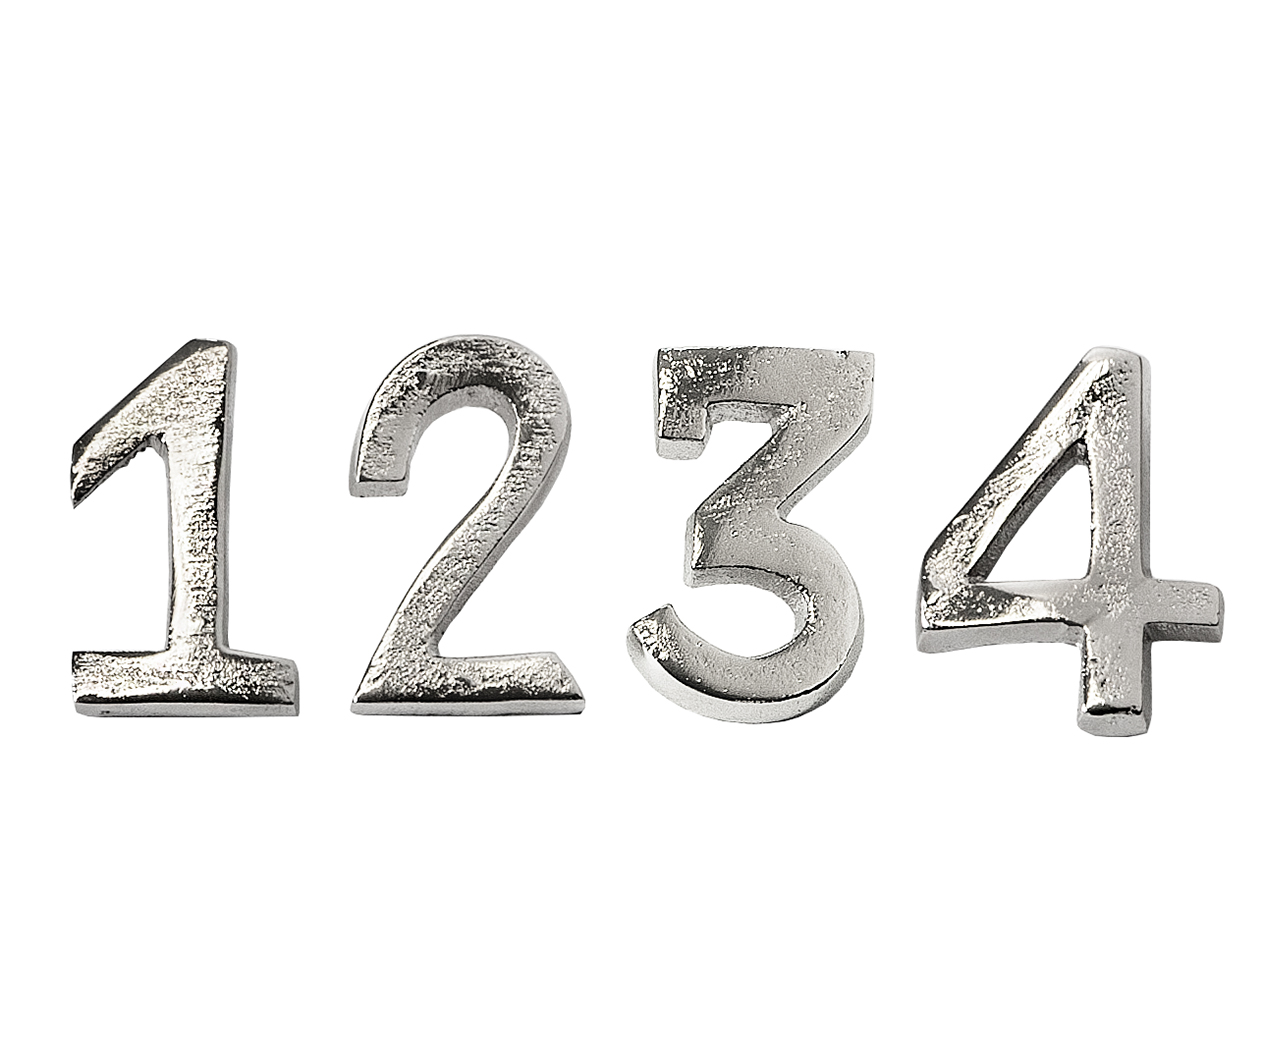 Aluminium vernickelt Silber 4er Set EDZARD Kerzenpin Kerzenstecker Advent 1-4 Höhe 4 cm